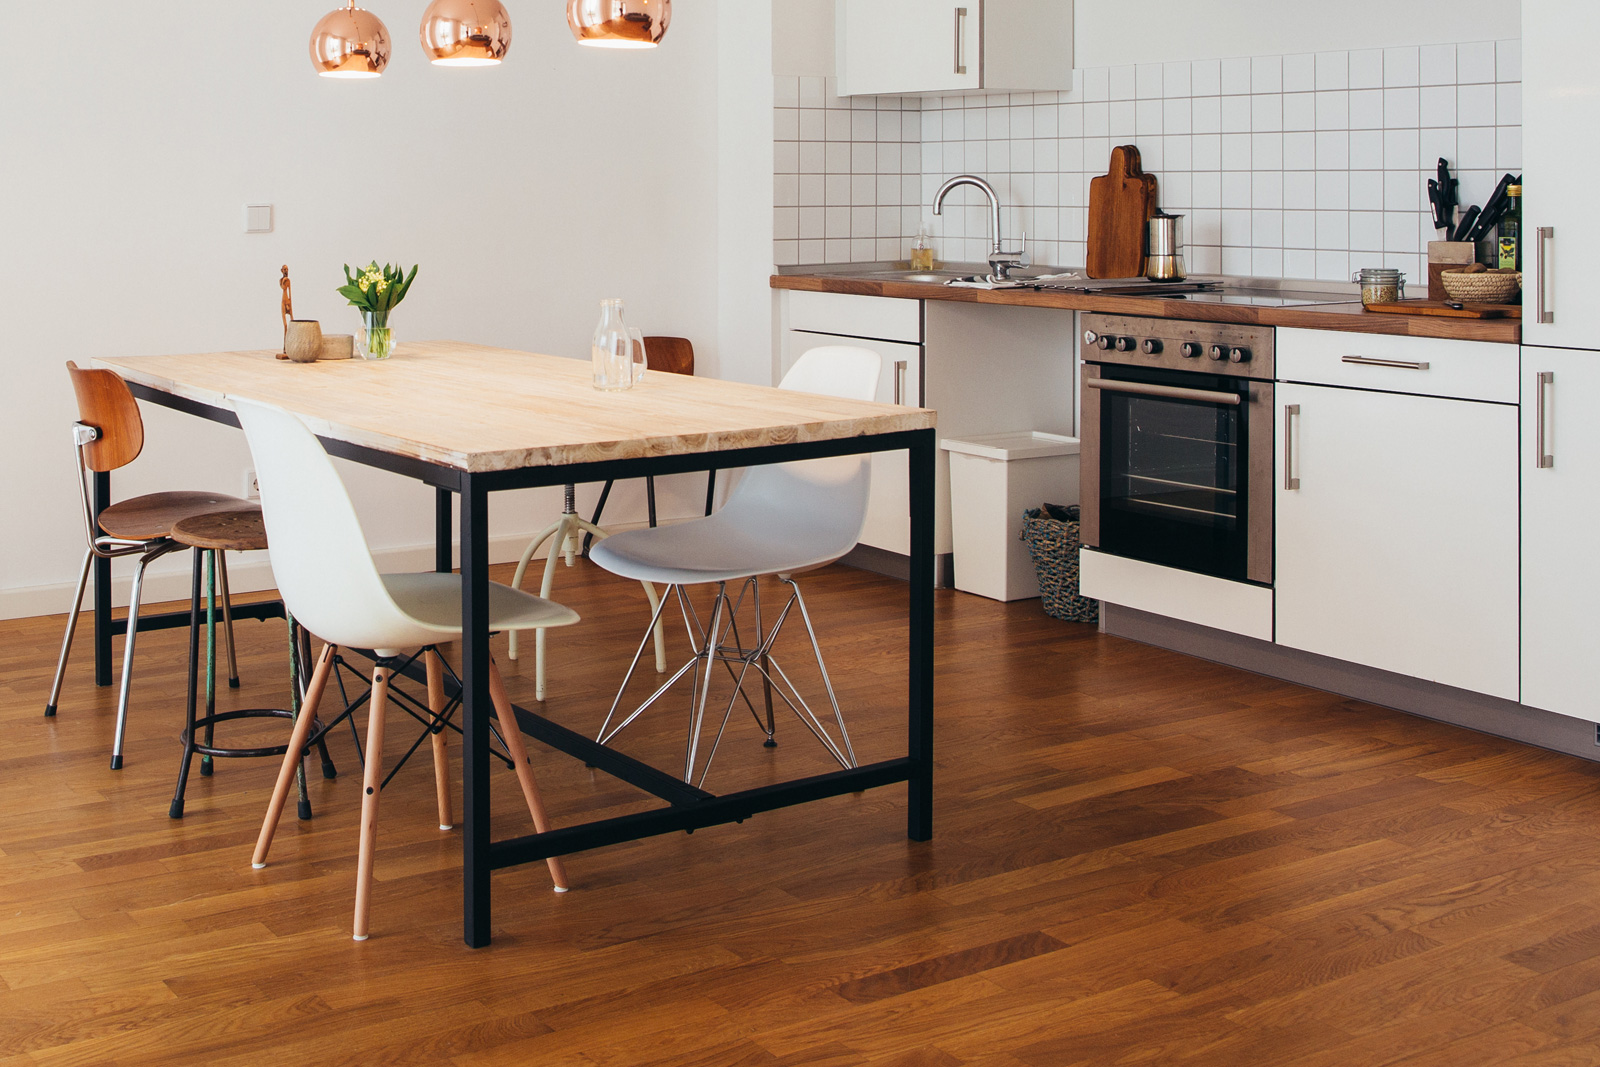 Modern kitchen with wooden floor kitchen flooring options | best flooring for kitchens EWFTGEJ